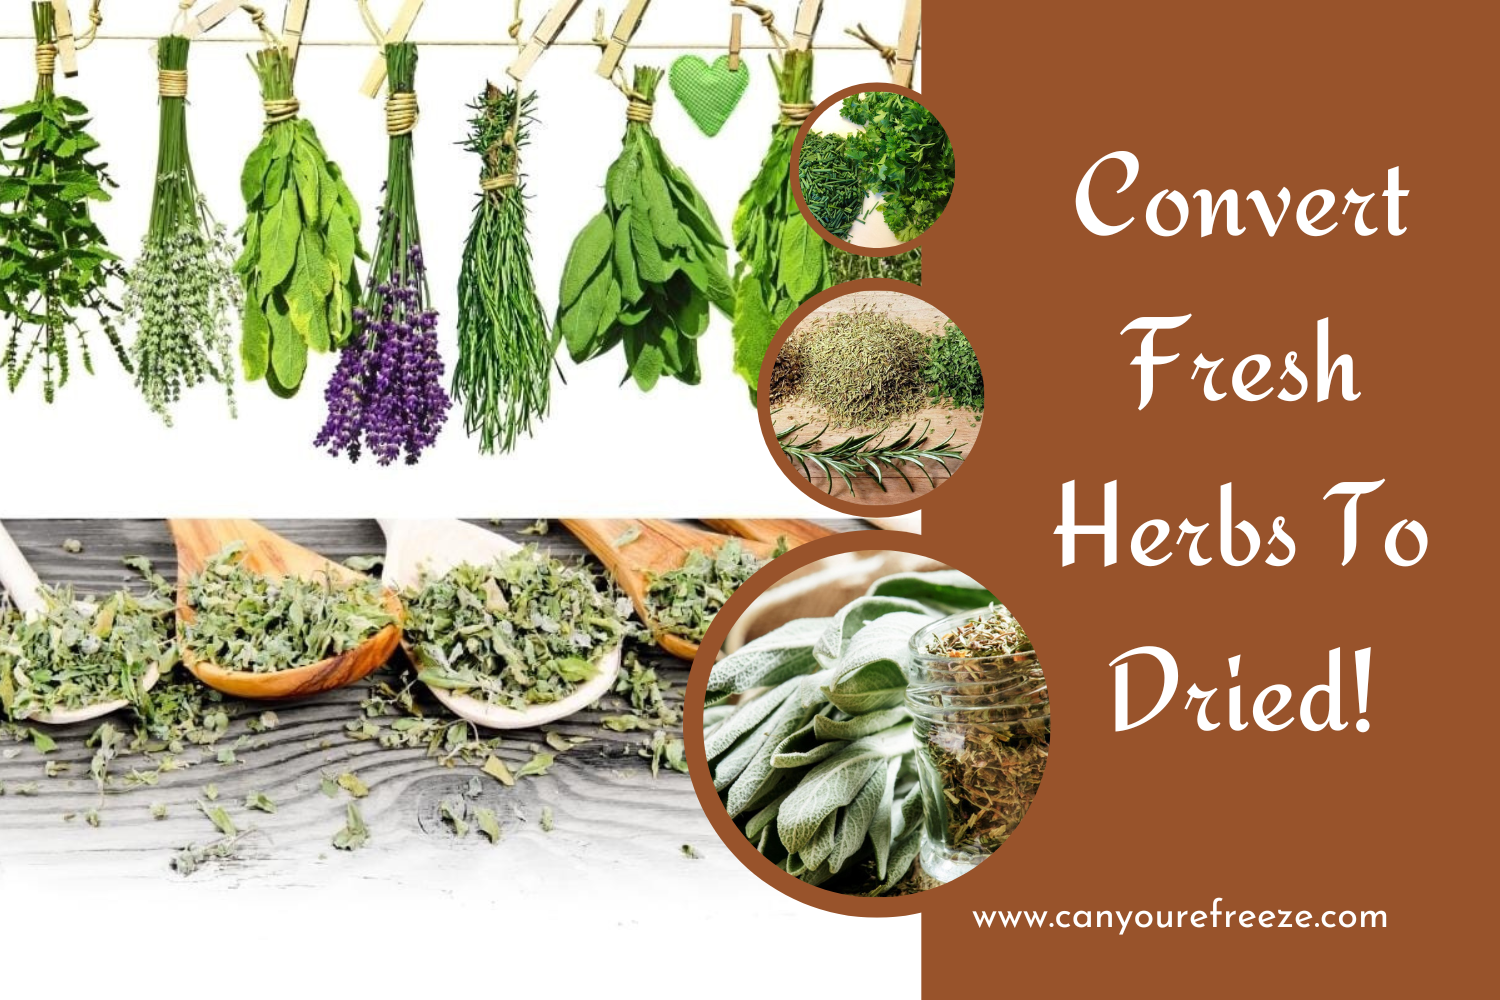 Convert Fresh Herbs To Dried